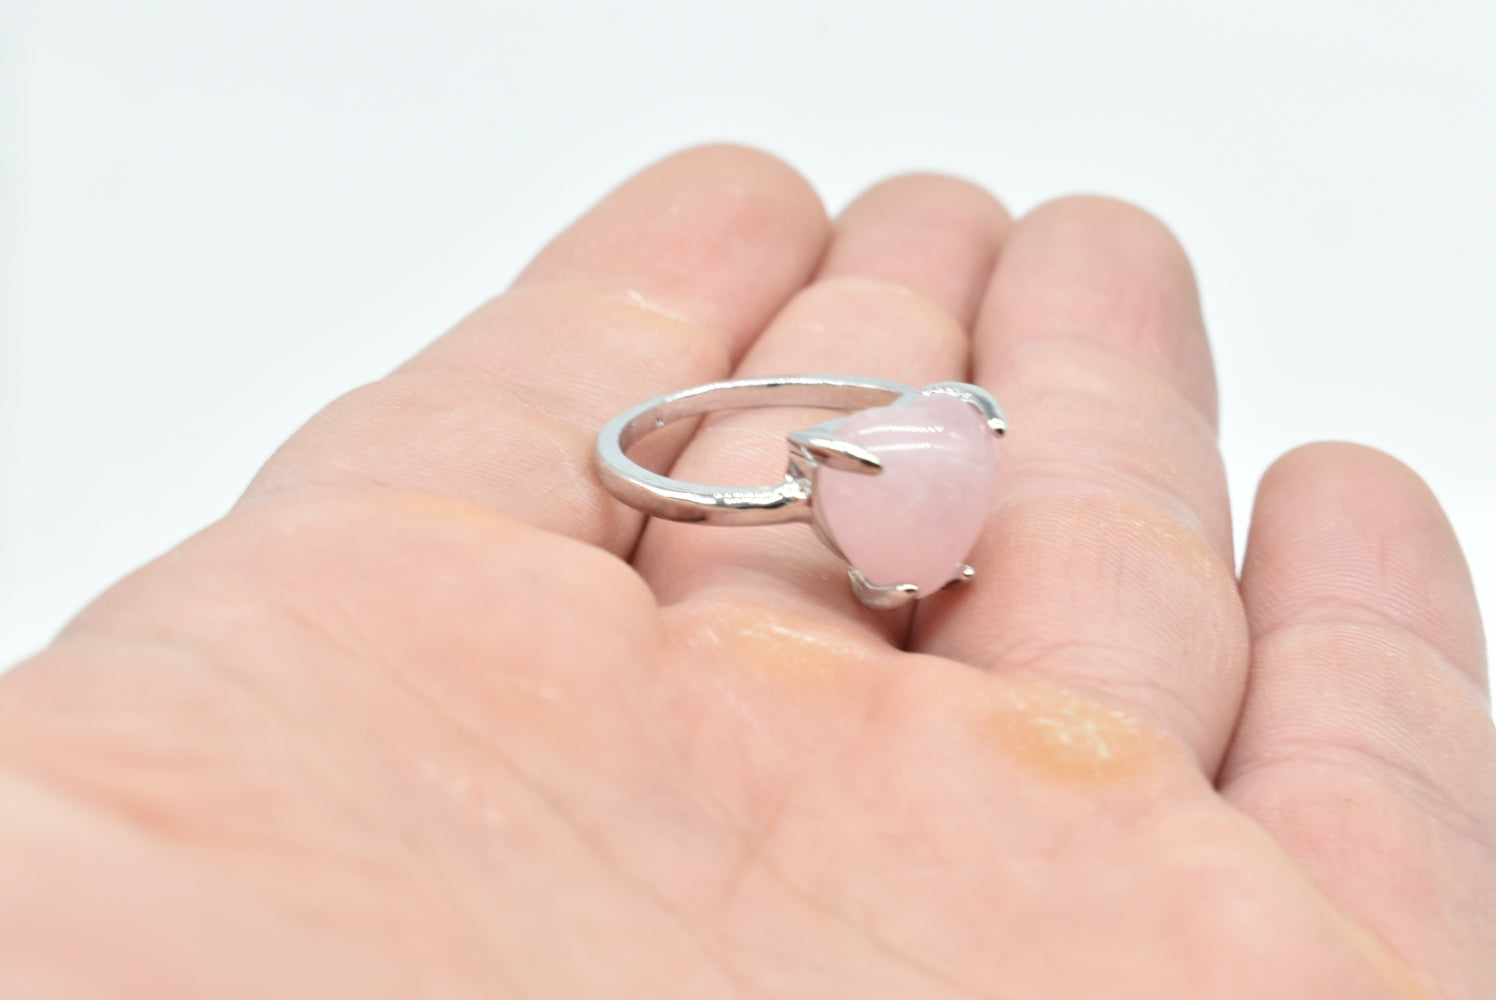 Ring With Rose Quartz stone